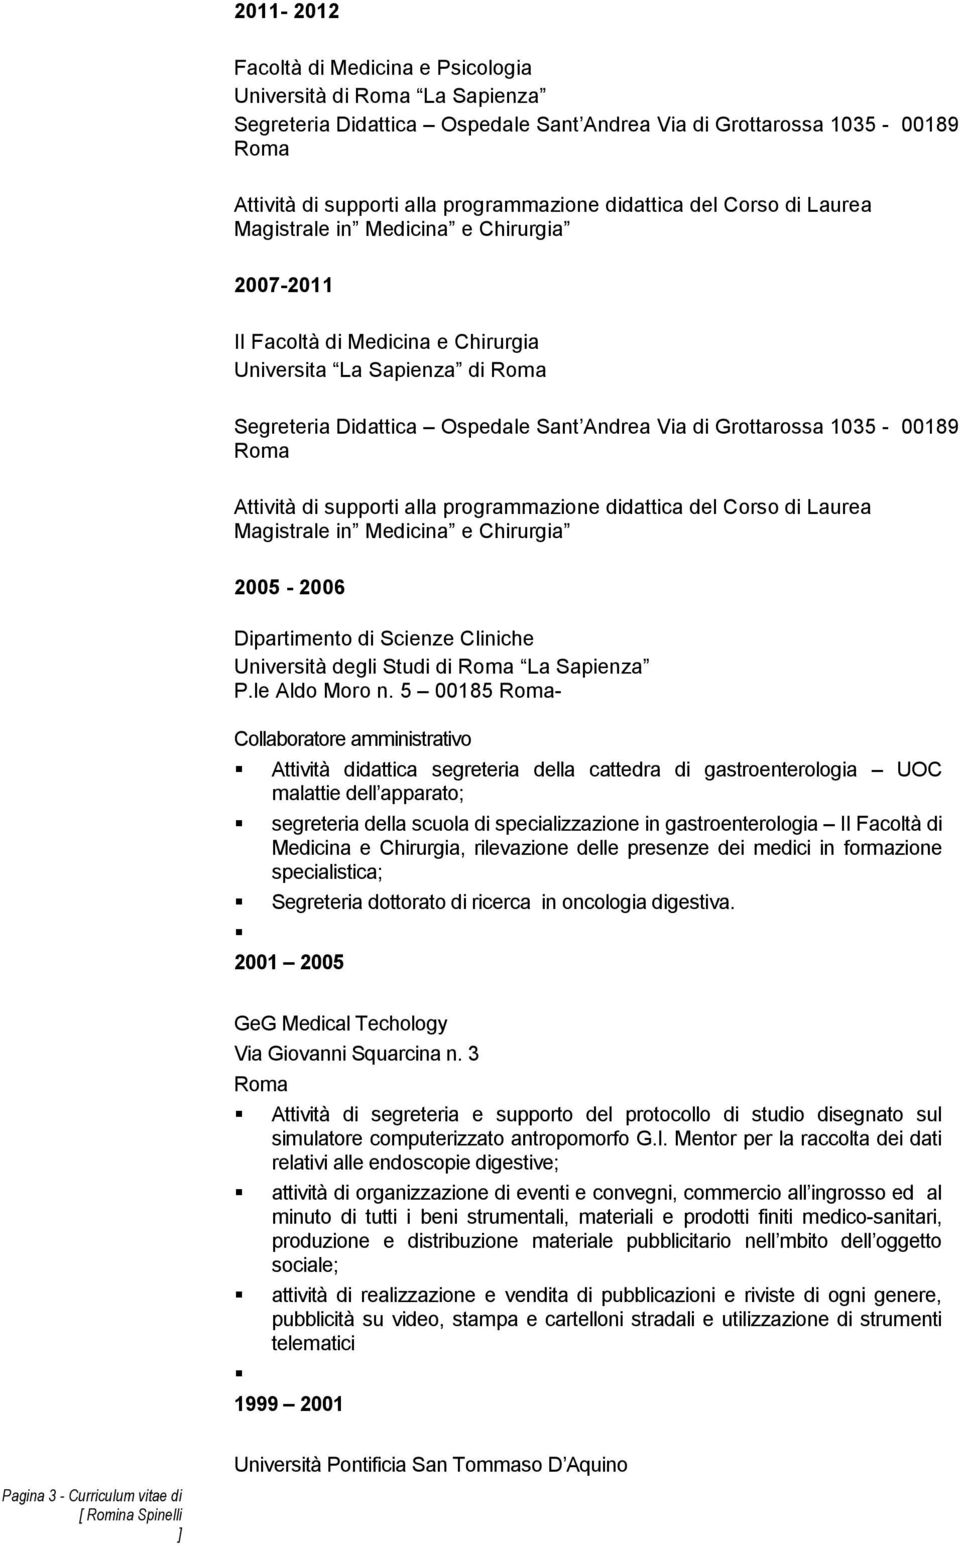 Attività di supporti alla programmazione didattica del Corso di Laurea Magistrale in Medicina e Chirurgia 2005-2006 di Scienze Cliniche P.le Aldo Moro n.